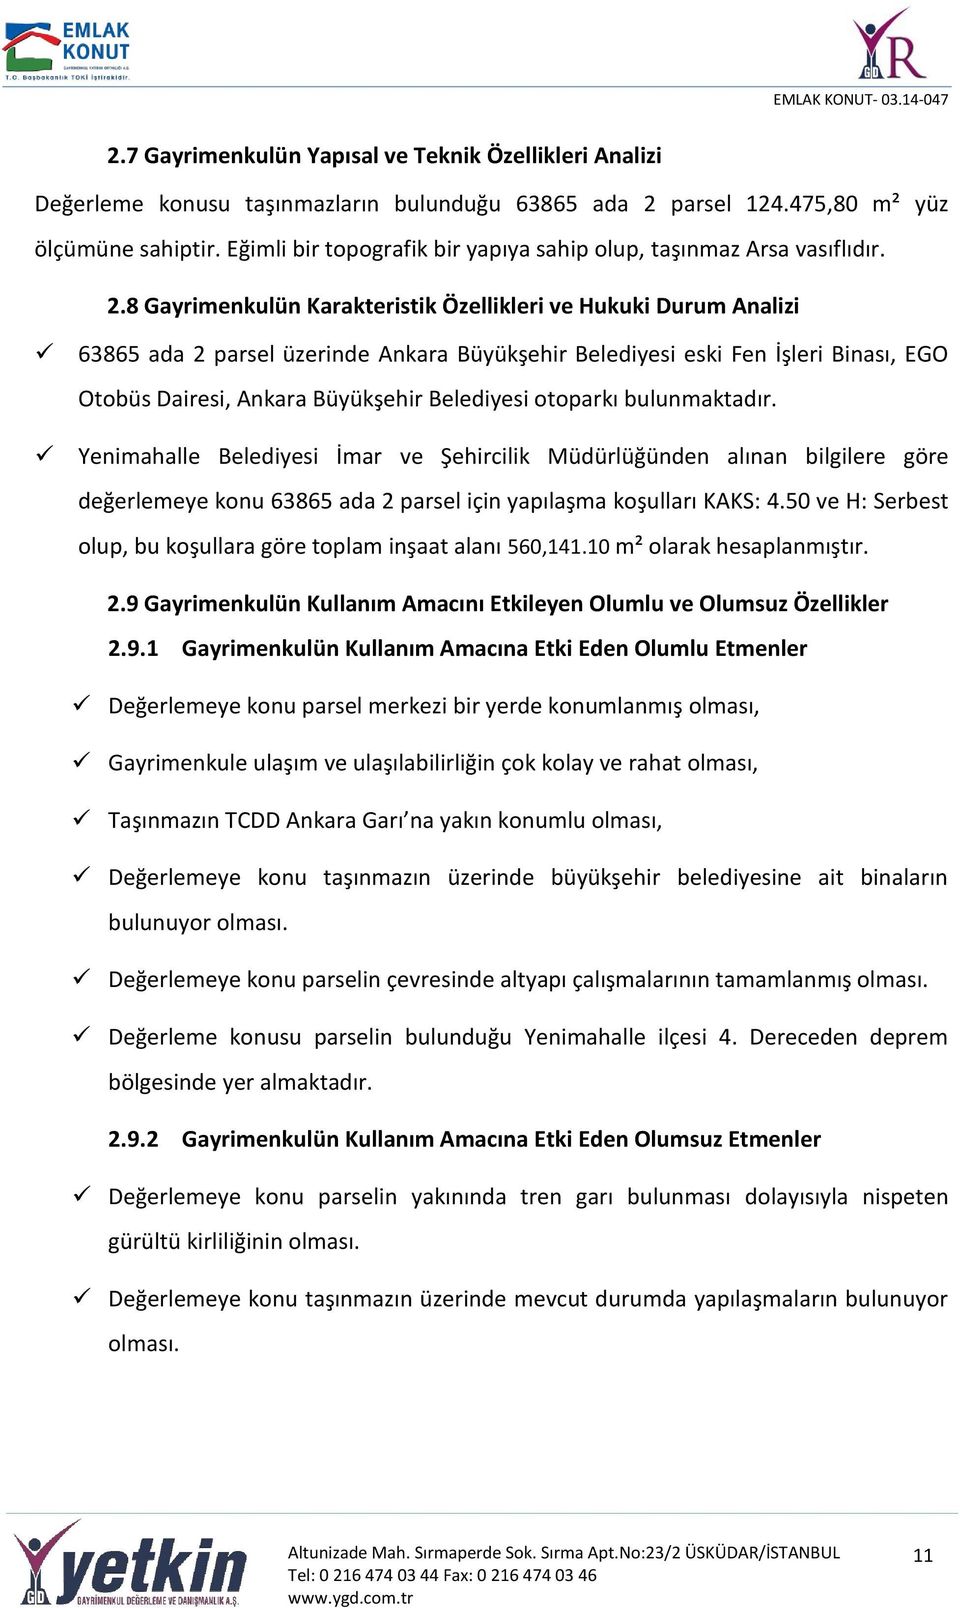 8 Gayrimenkulün Karakteristik Özellikleri ve Hukuki Durum Analizi 63865 ada 2 parsel üzerinde Ankara Büyükşehir Belediyesi eski Fen İşleri Binası, EGO Otobüs Dairesi, Ankara Büyükşehir Belediyesi